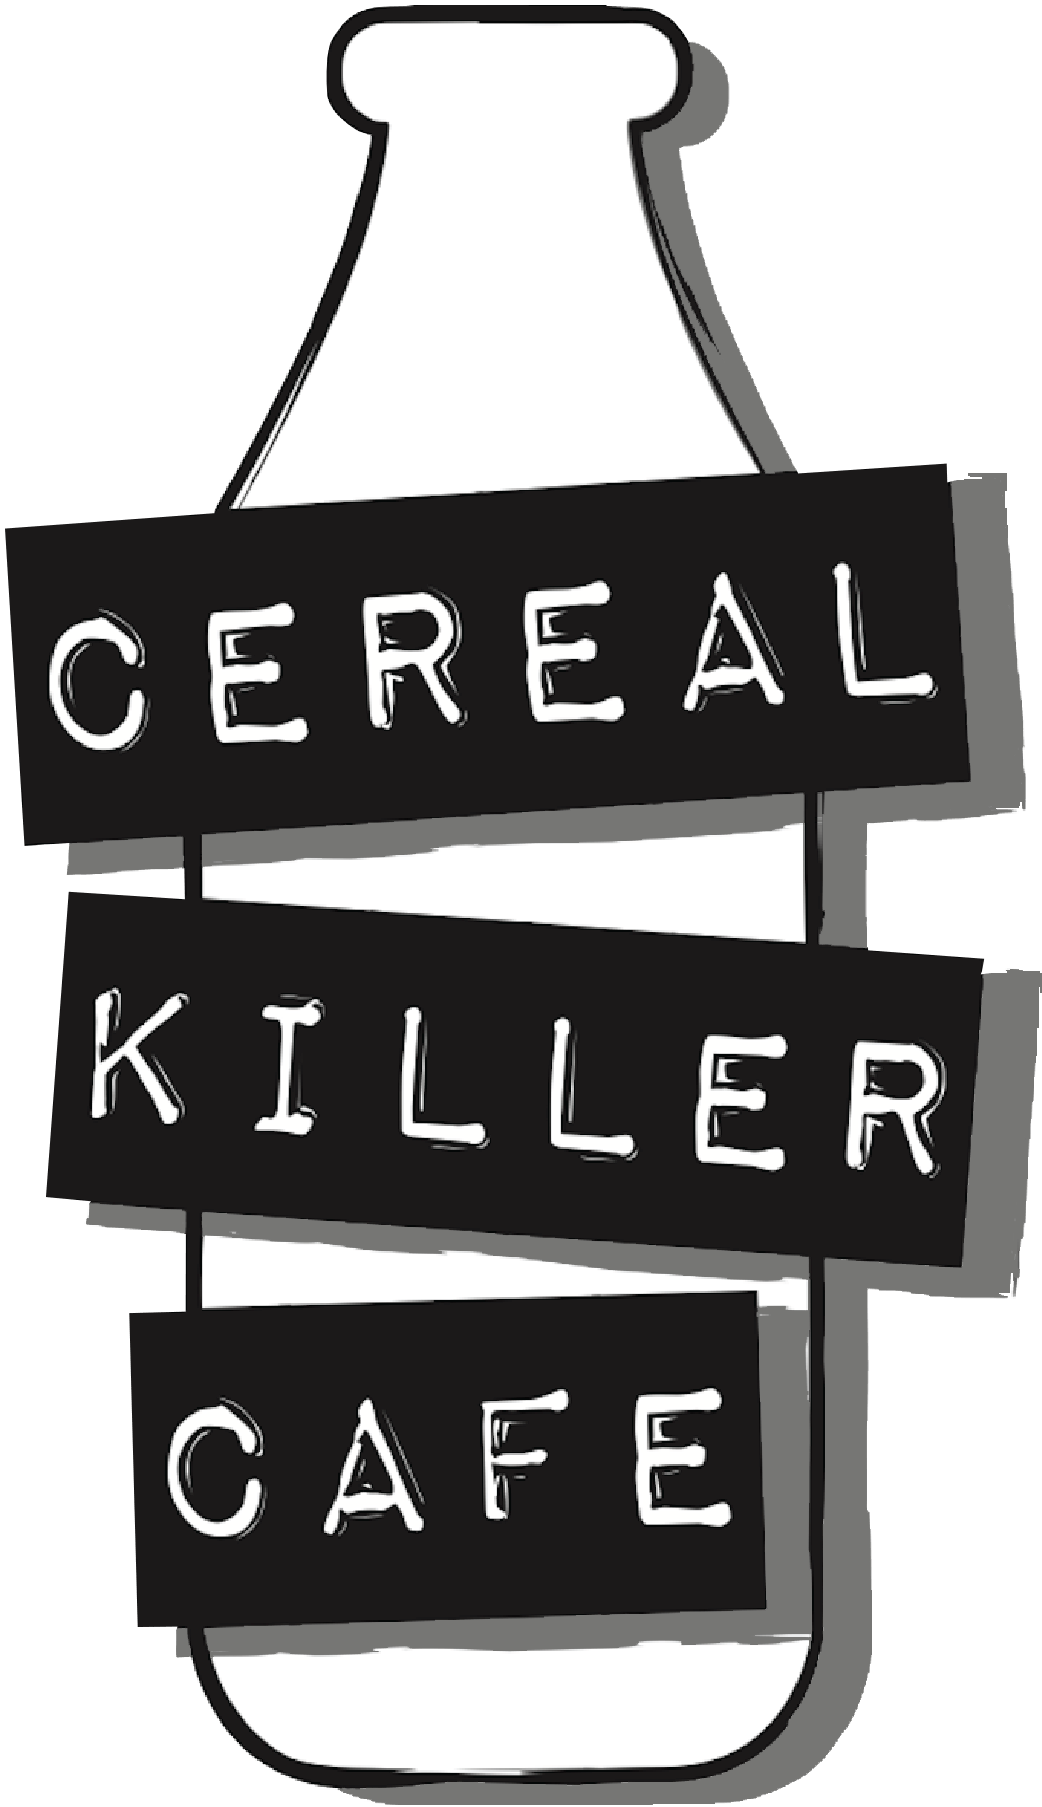 All Cafe Logo - Cereal Killer Cafe - London